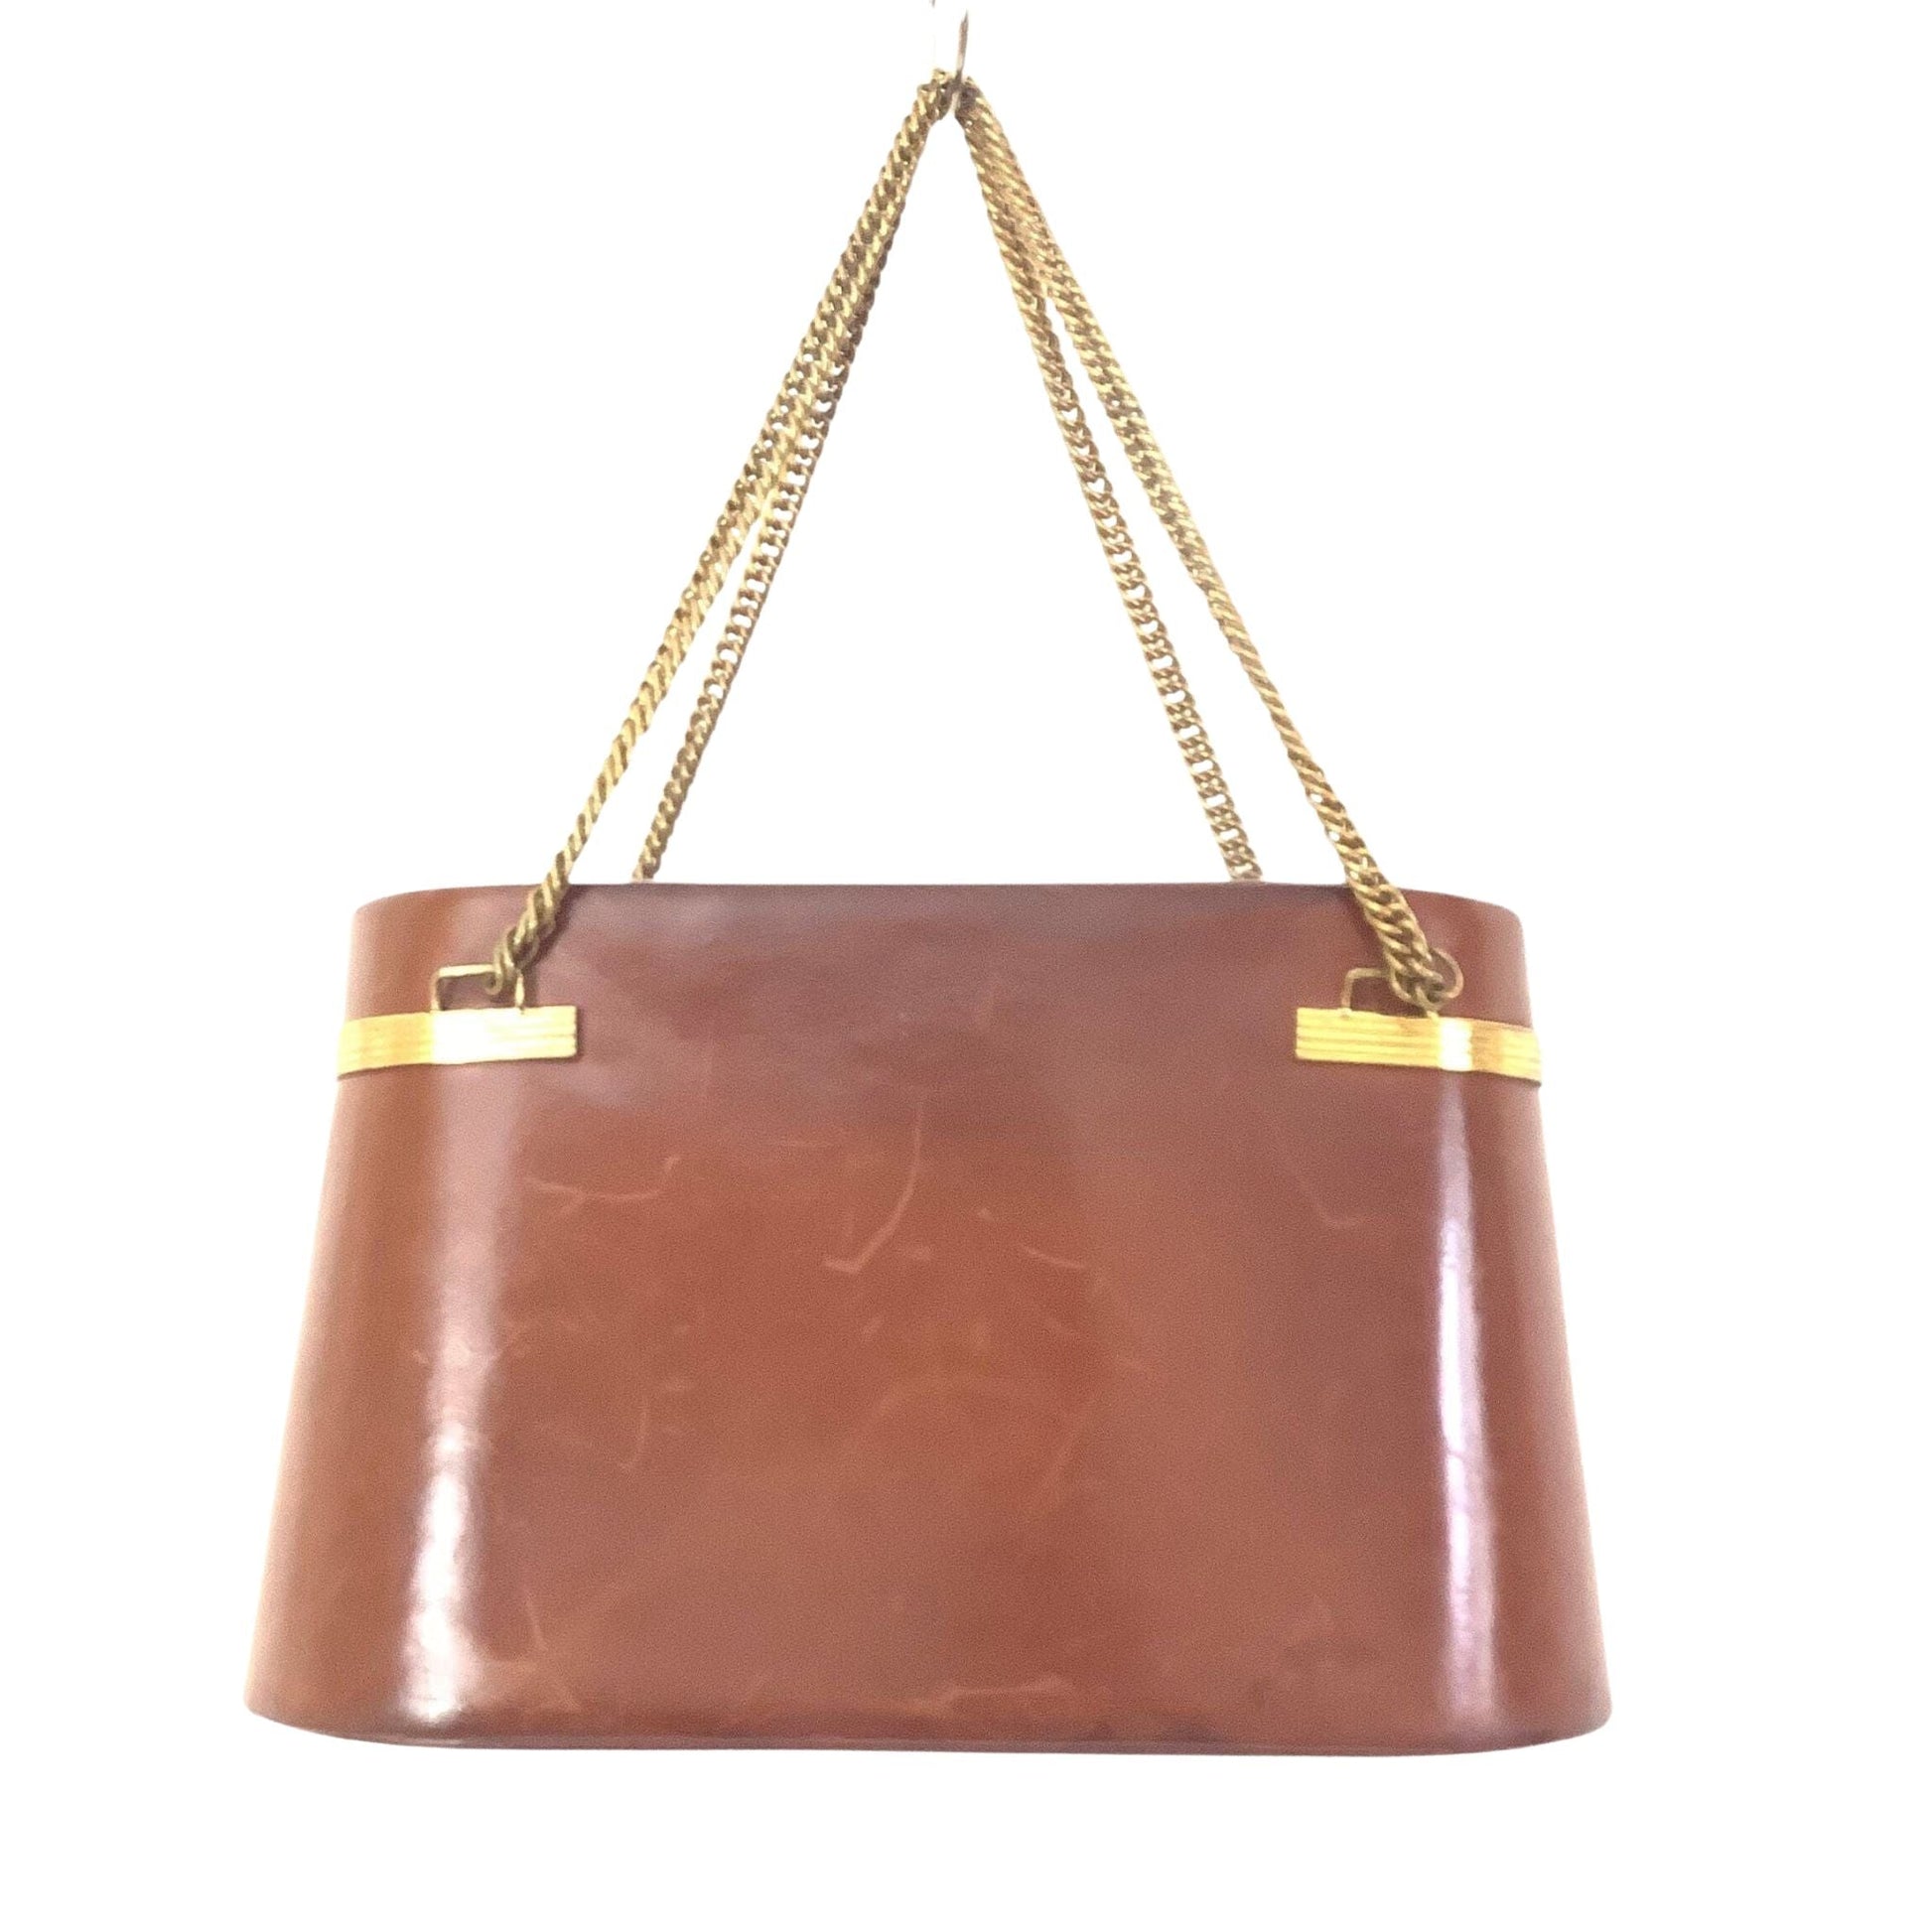 Murray Kruger Handbag Brown / Leather / Vintage 1920s